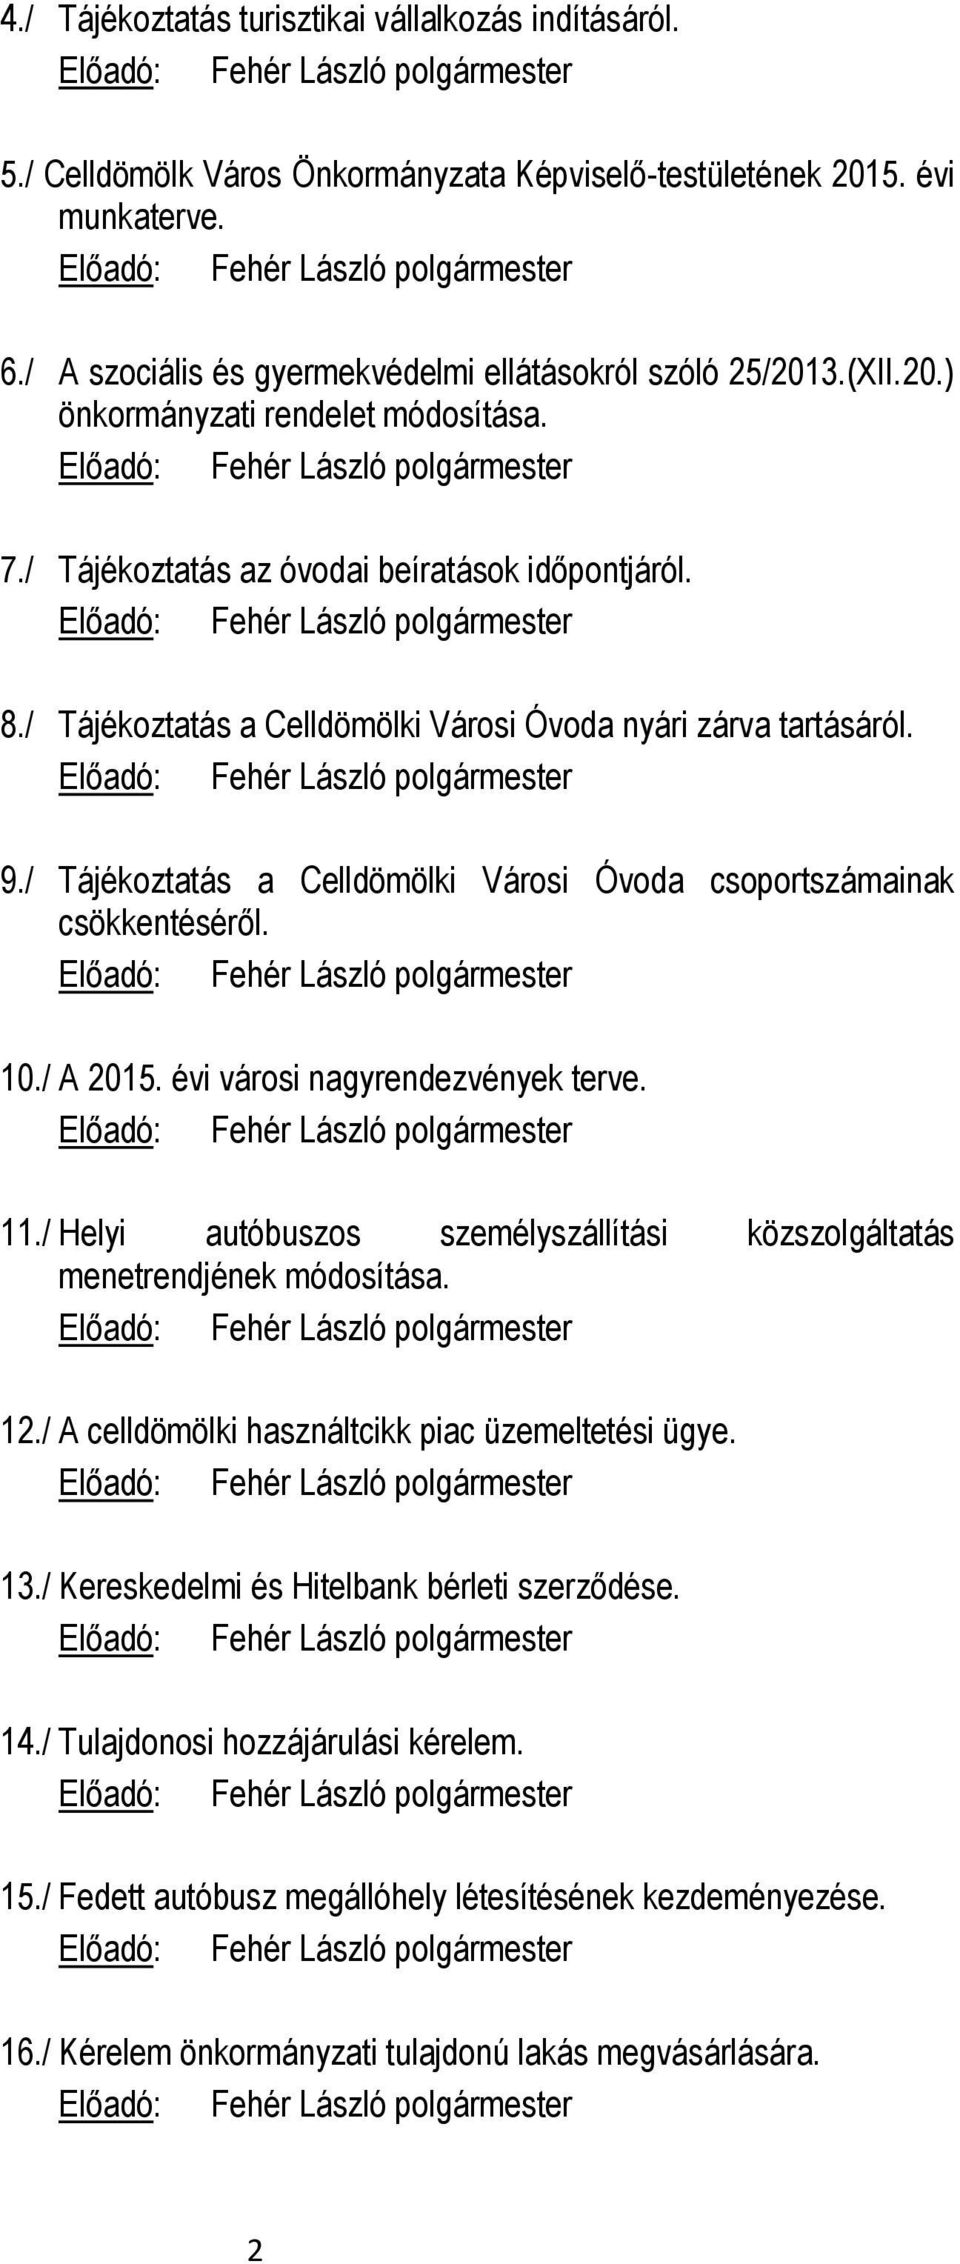 / Tájékoztatás a Celldömölki Városi Óvoda csoportszámainak csökkentéséről. 10./ A 2015. évi városi nagyrendezvények terve. 11.